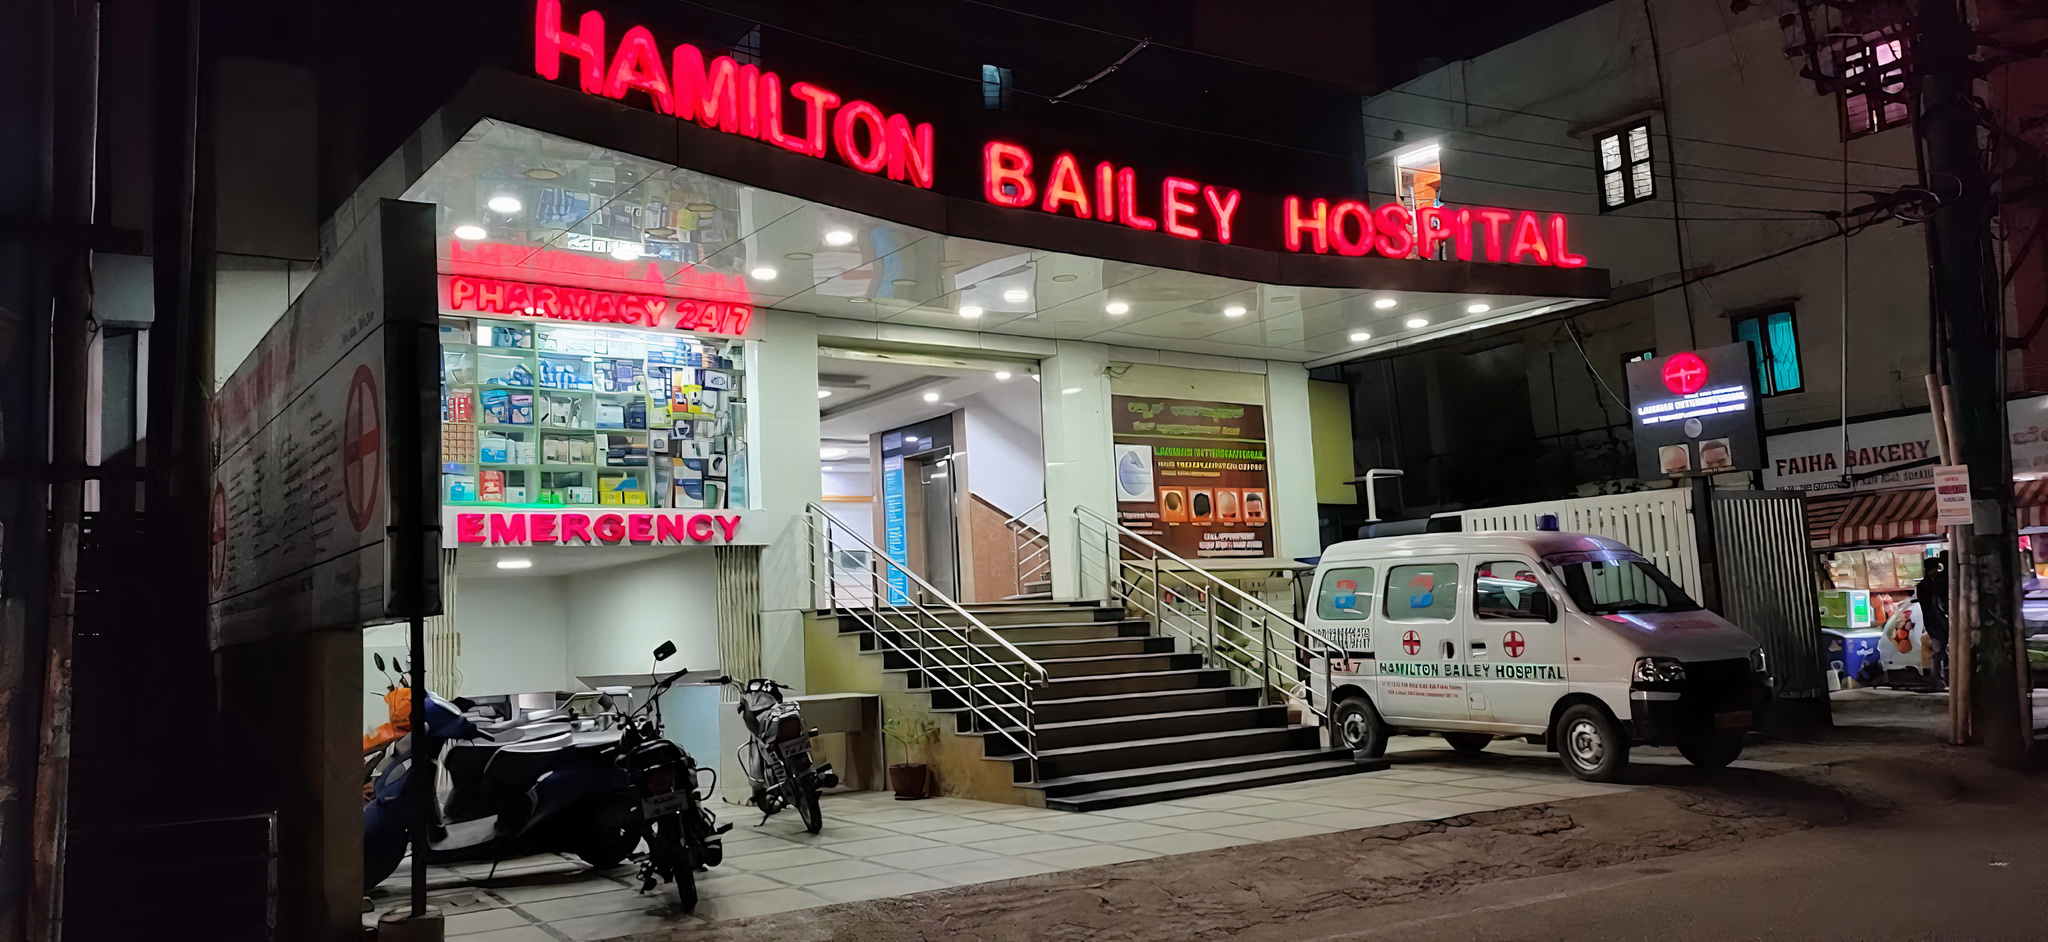 Hamilton Bailey Hospital photo